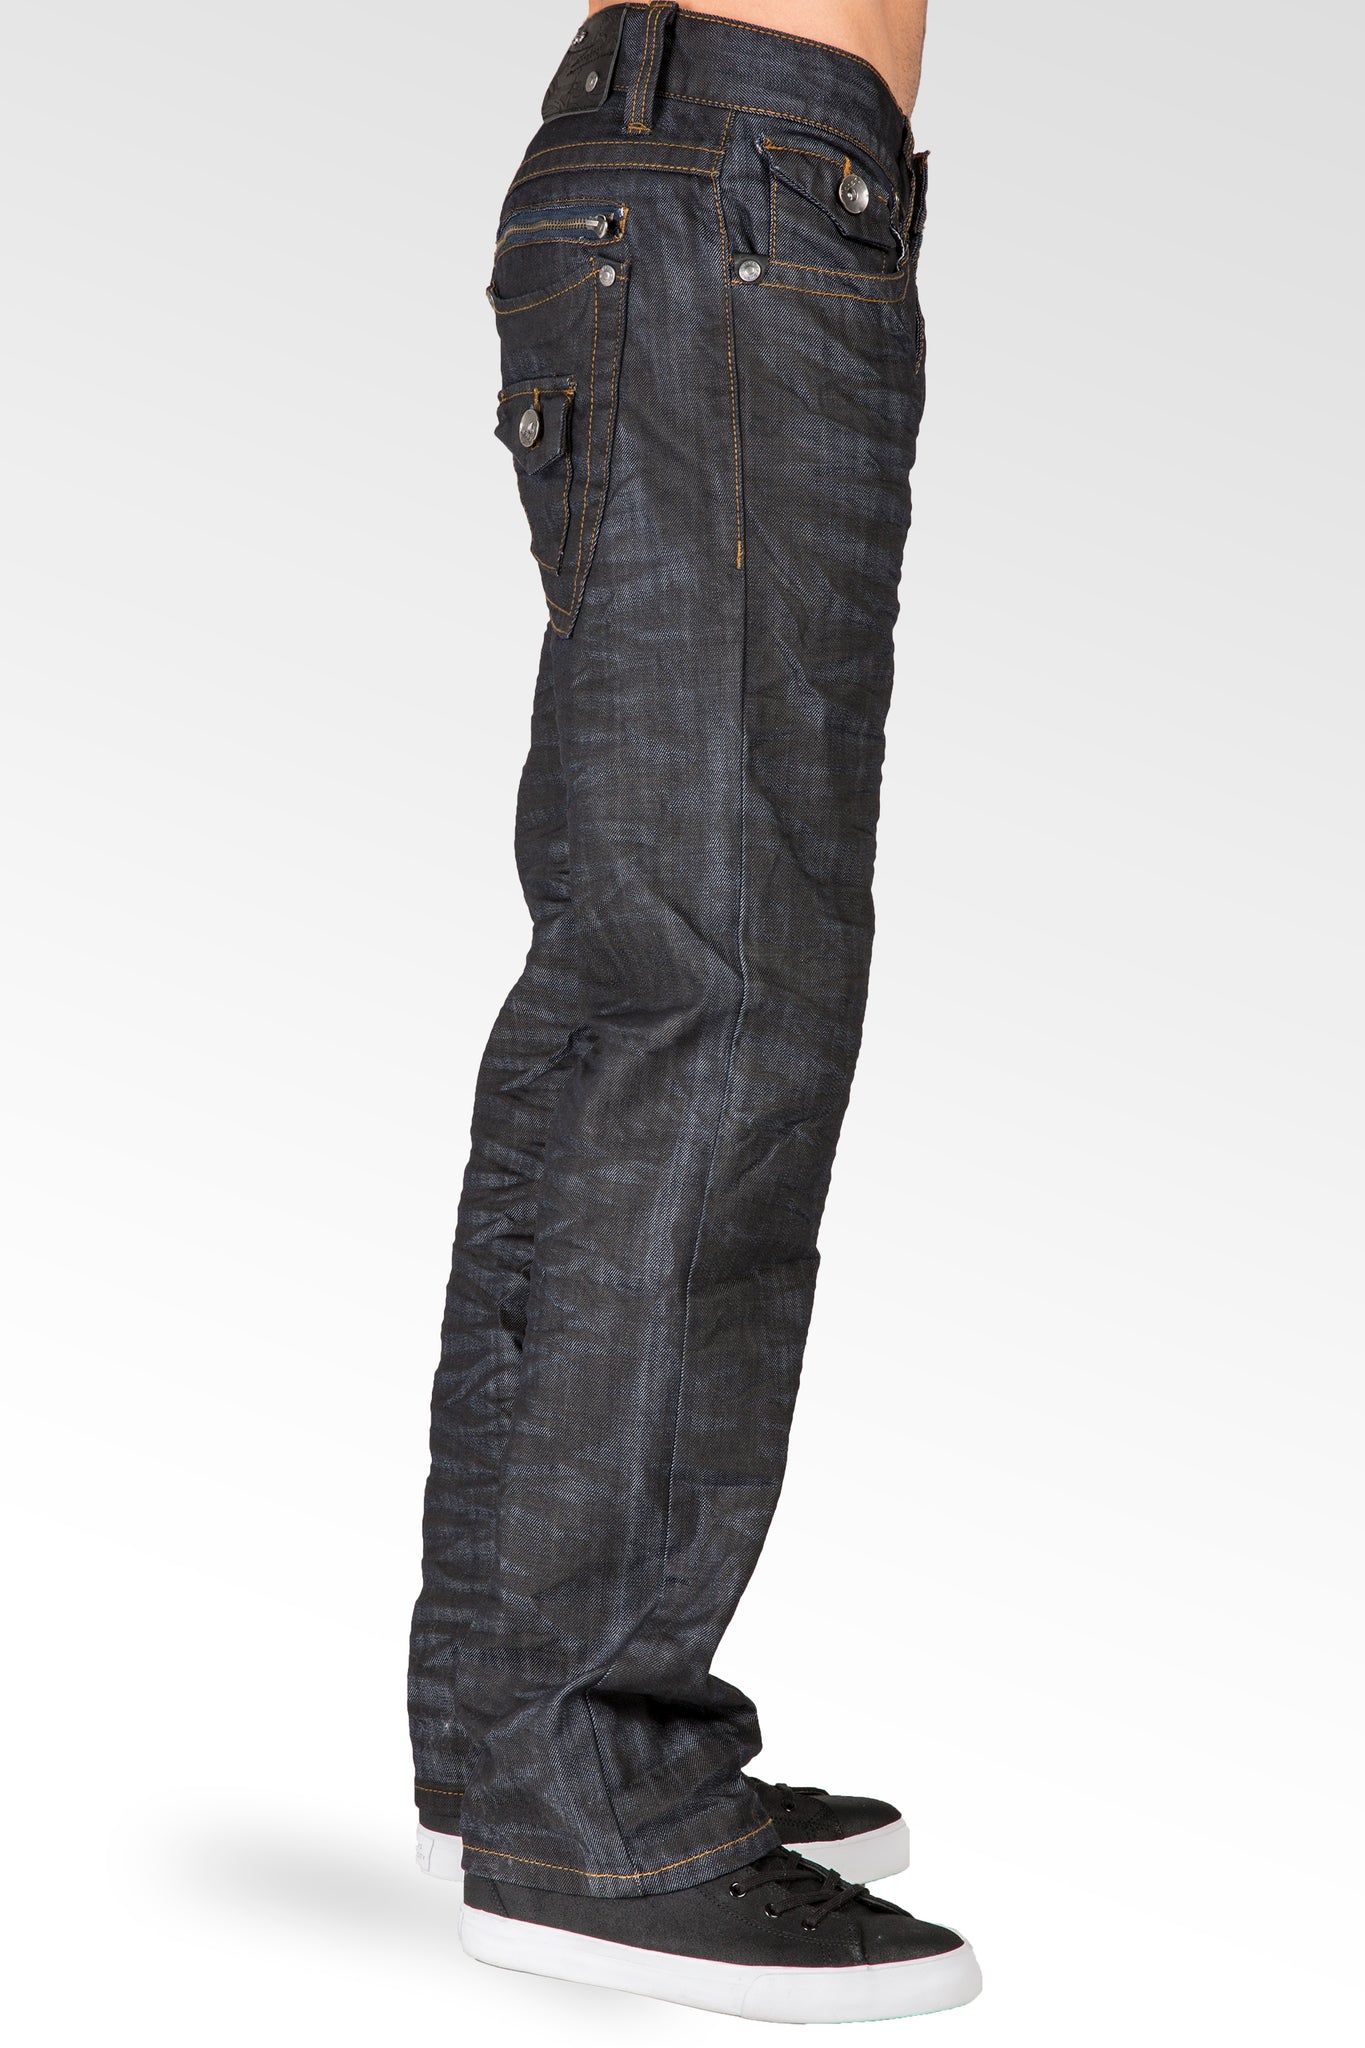 Midrise Relaxed Straight Leg Black Whisker Coating Premium Denim Jeans Zip Back pocket